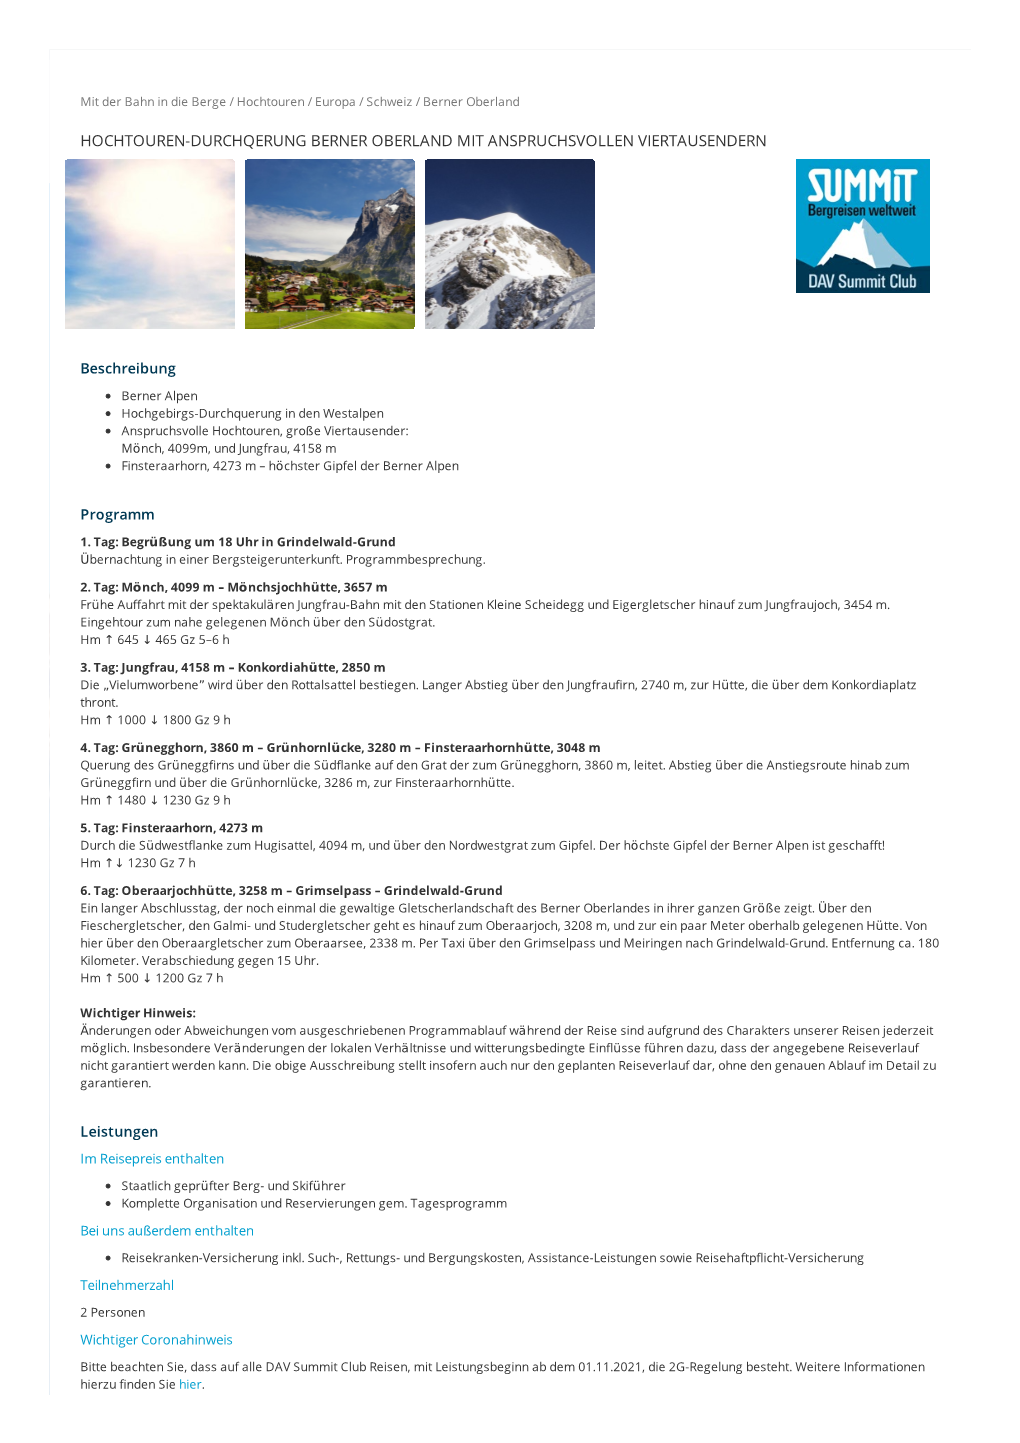 Hochtouren-Durchqerung Berner Oberland Mit Anspruchsvollen Viertausendern